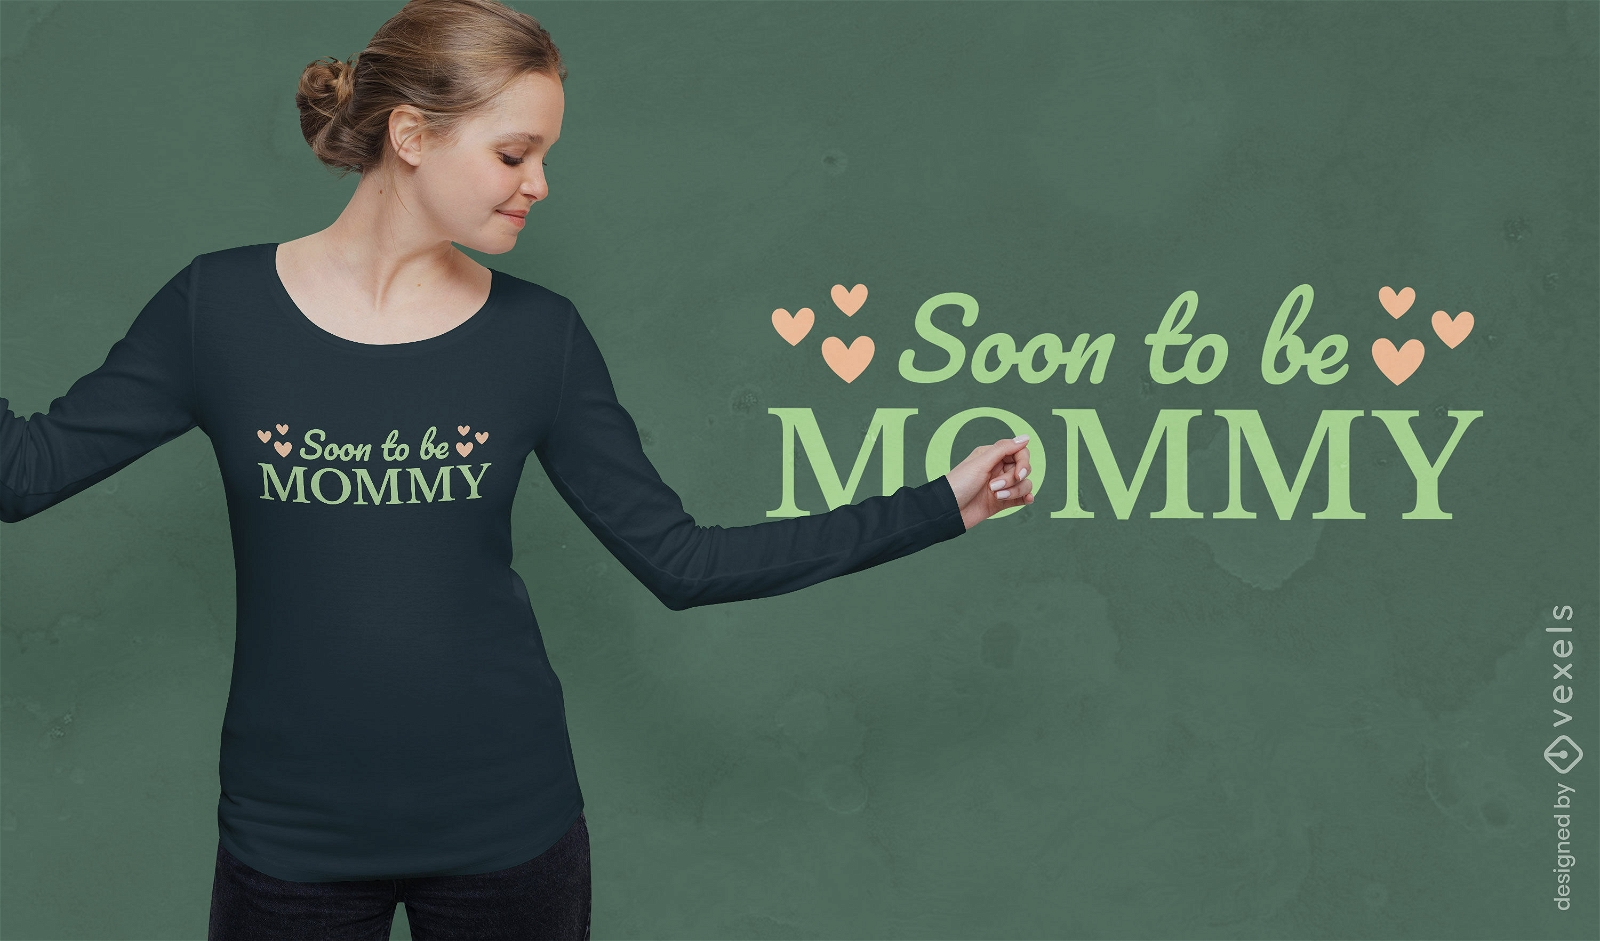 Diseño de camiseta con revelación de maternidad.